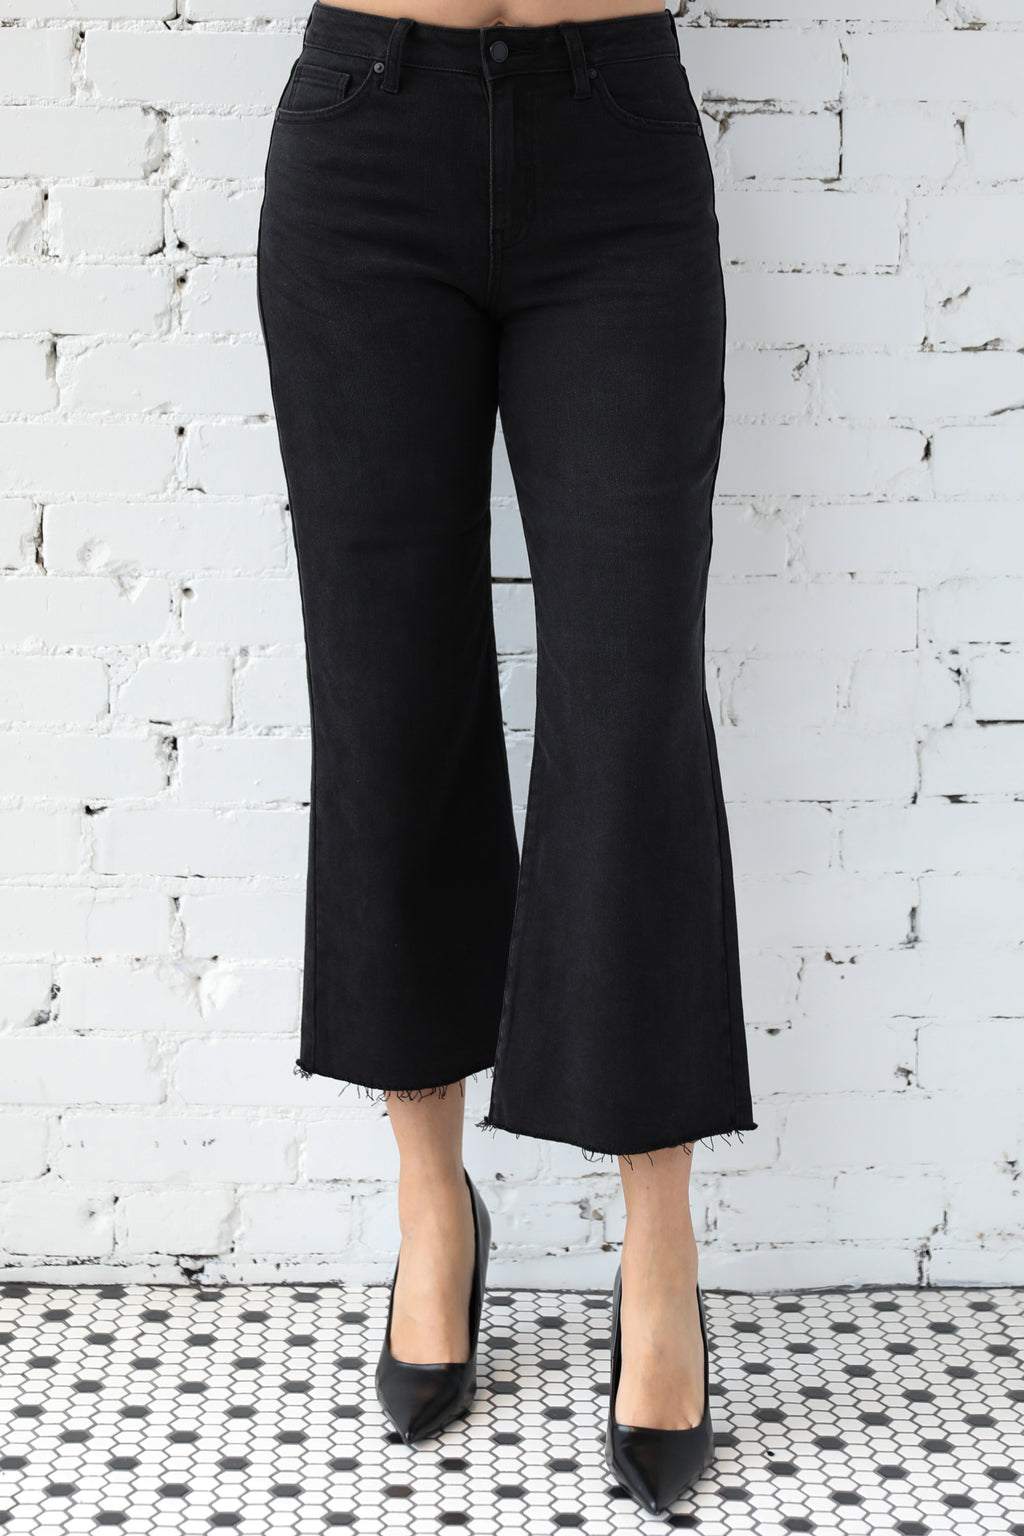 Women's Jeans, Denim Shorts & Jean Jackets | Parpar Clothing